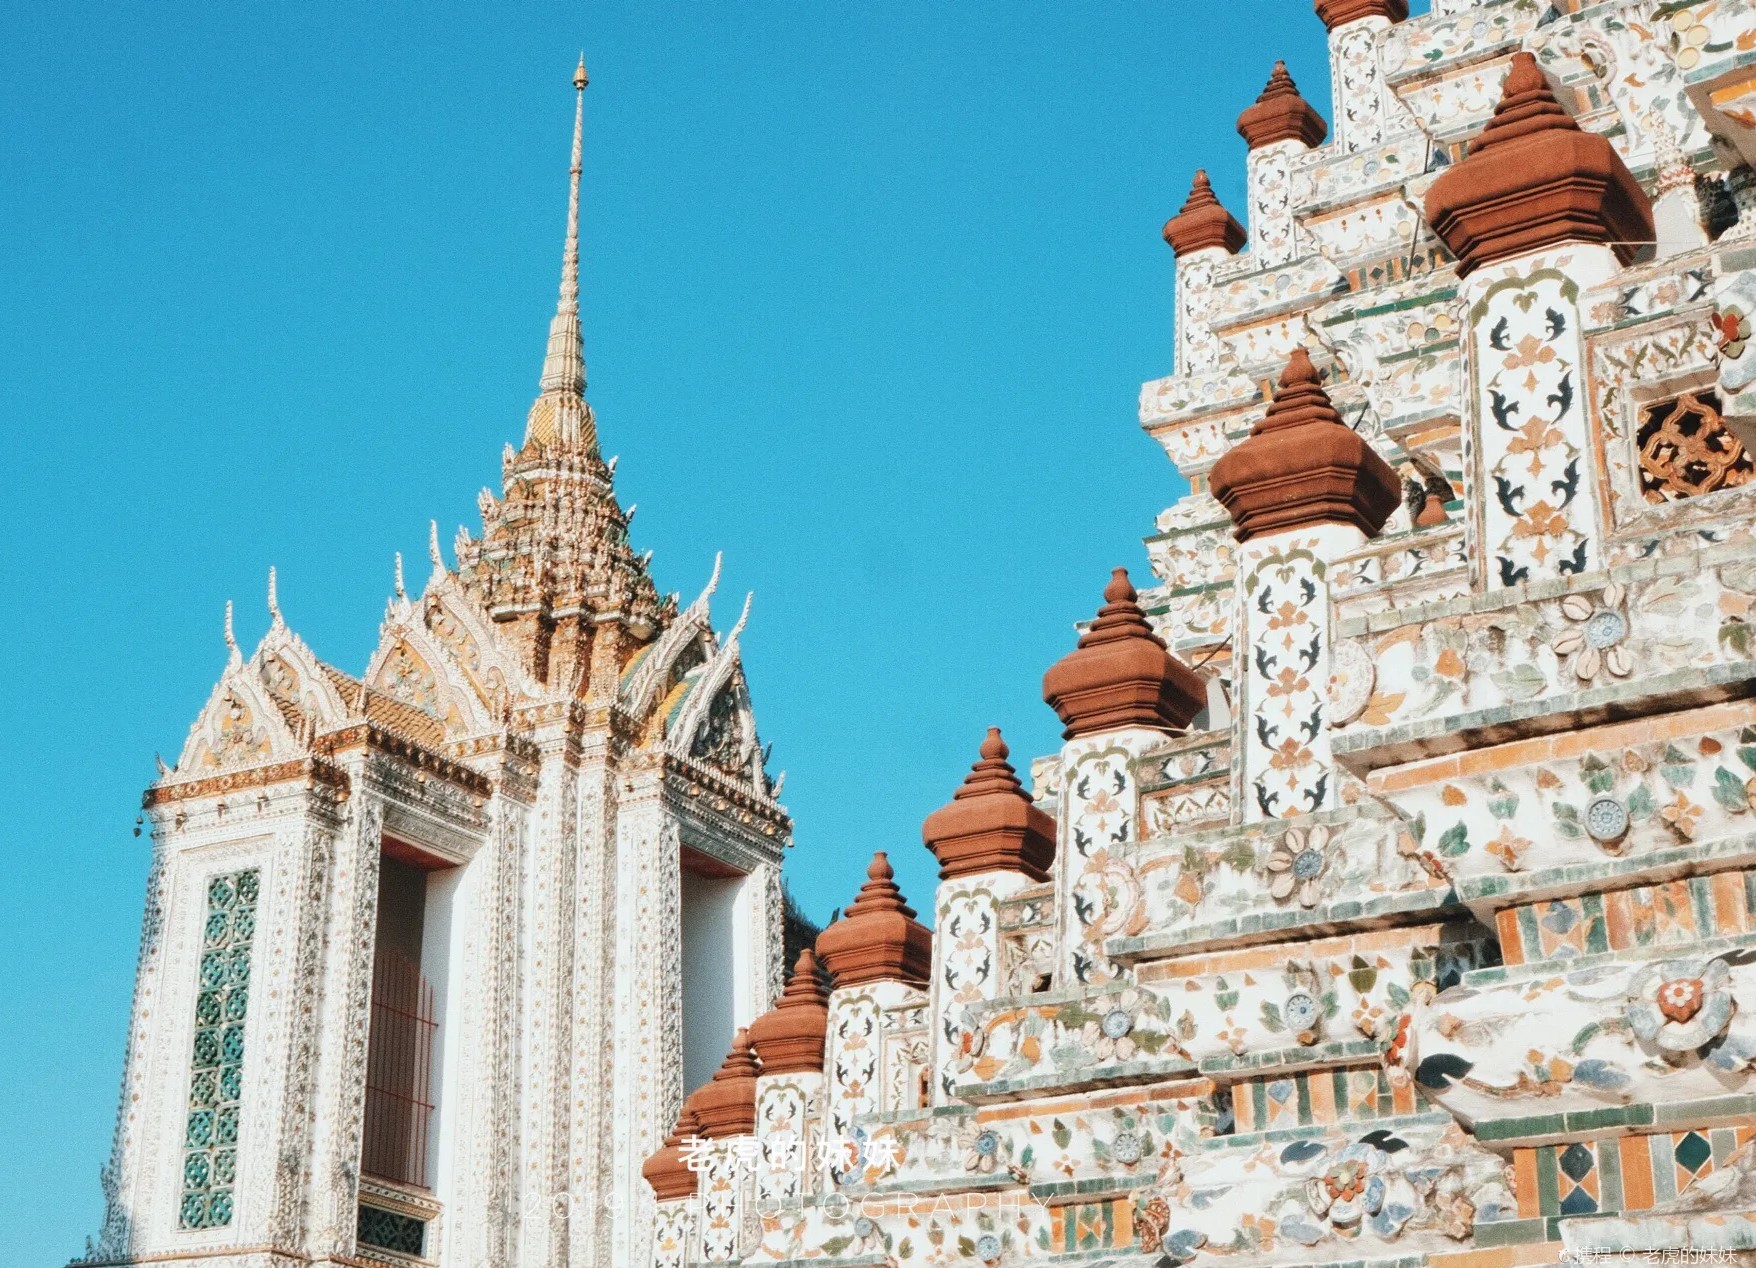 14 Best Temples in Bangkok